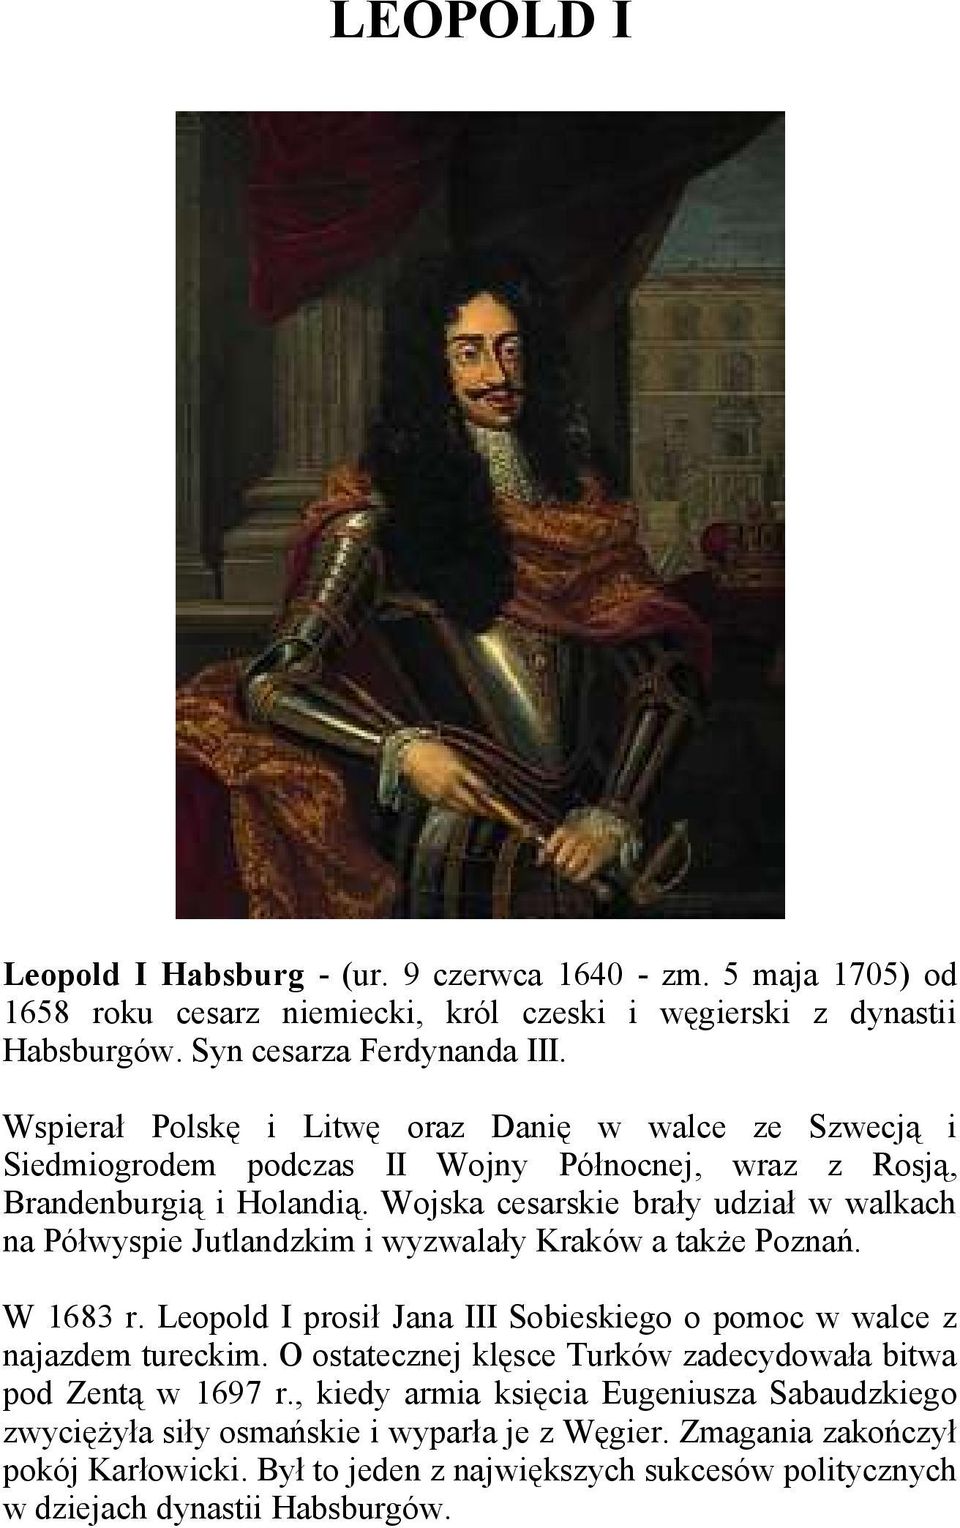 Wojska cesarskie brały udział w walkach na Półwyspie Jutlandzkim i wyzwalały Kraków a także Poznań. W 1683 r. Leopold I prosił Jana III Sobieskiego o pomoc w walce z najazdem tureckim.